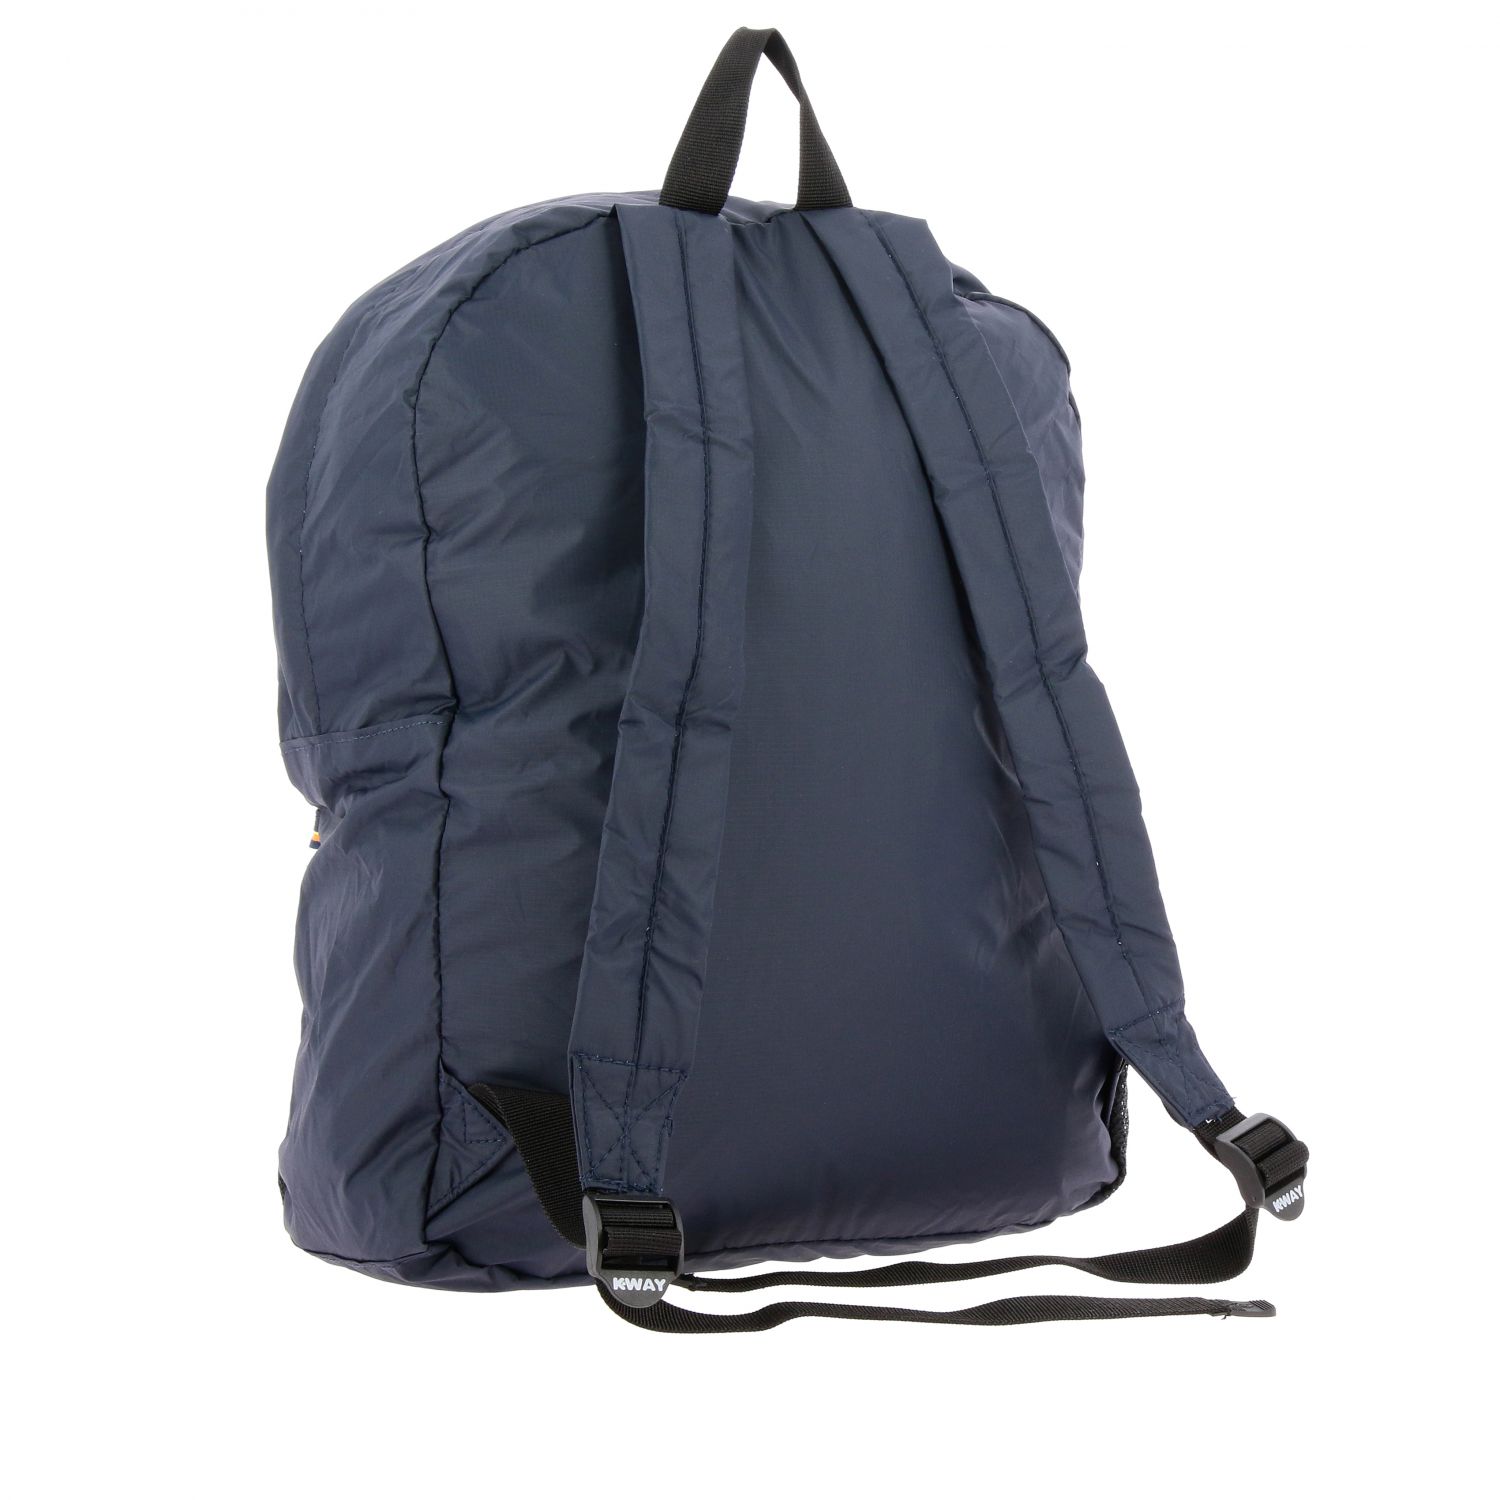 K-Way Outlet: travel bag for man - Blue | K-Way travel bag K006X60 ...